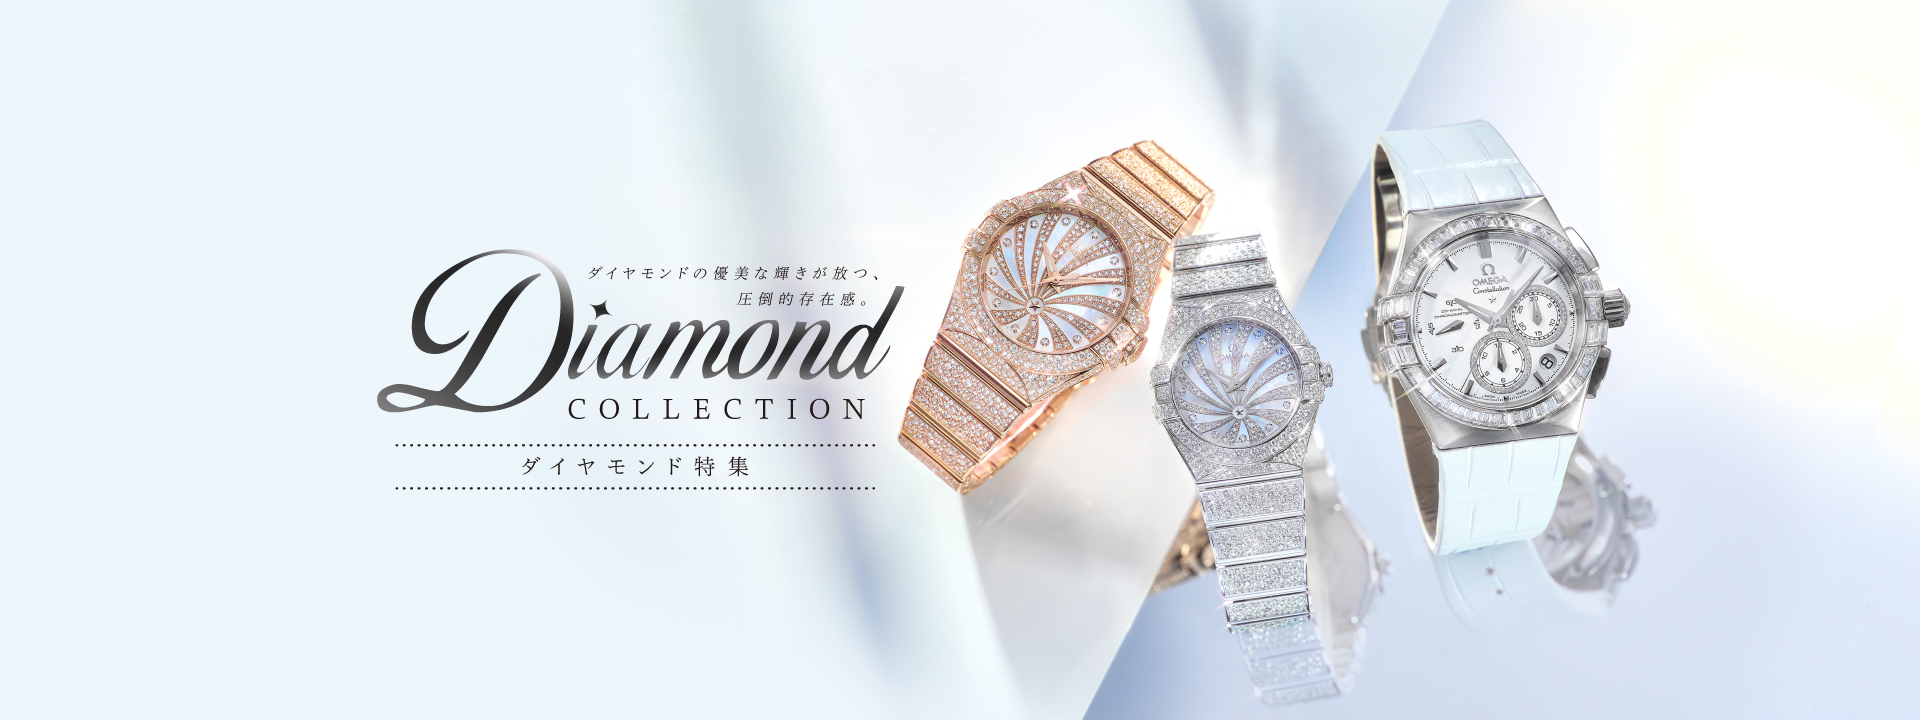 ダイヤモンドの腕時計特集です。